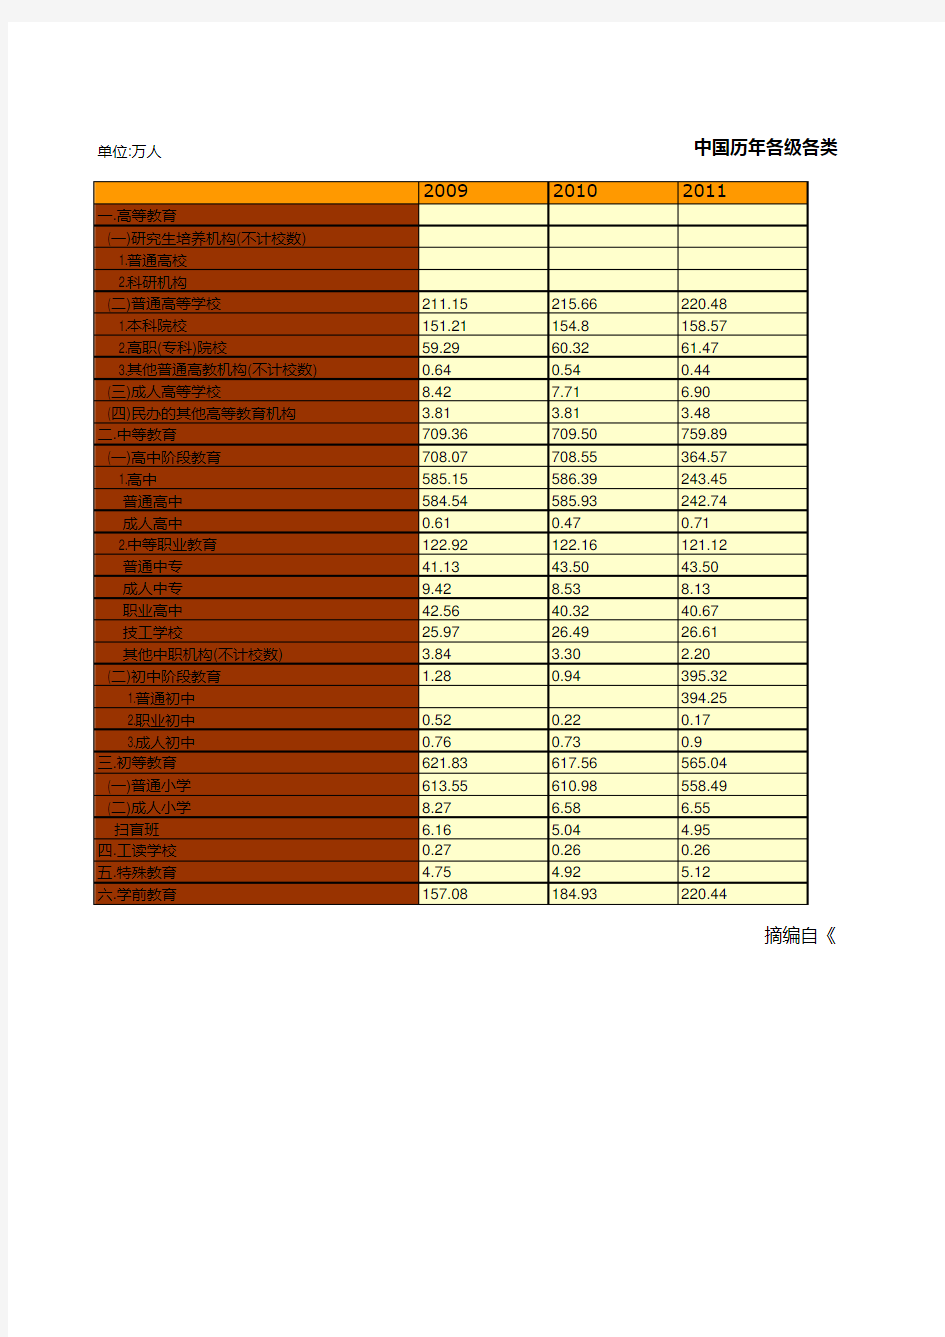 教育事业发展全国及各地省市区统计数据：中国历年各级各类学校教职工数统计(2009-2018)